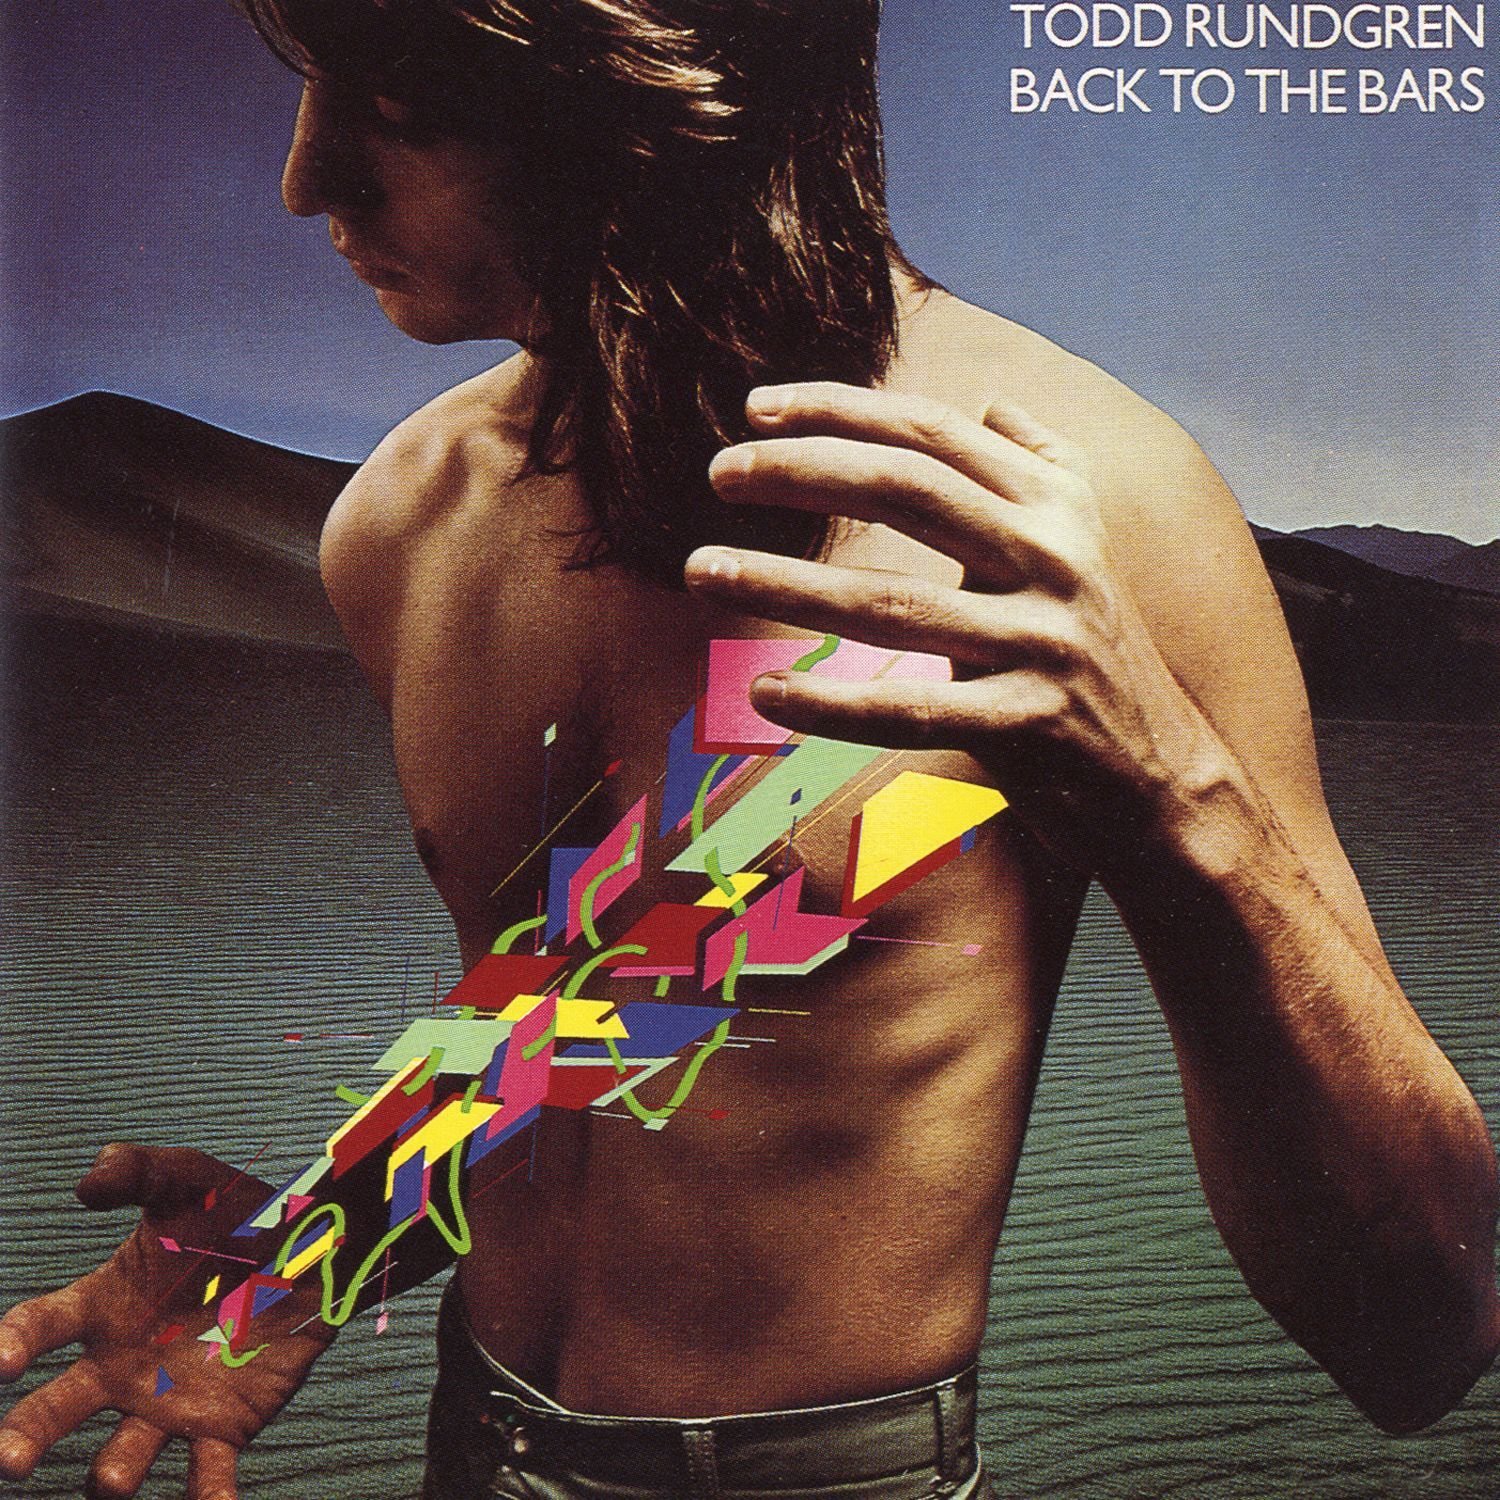 Todd Rundgren - Back to the Bars (Live) (1978/2016) [HDTracks FLAC 24bit/192kHz]